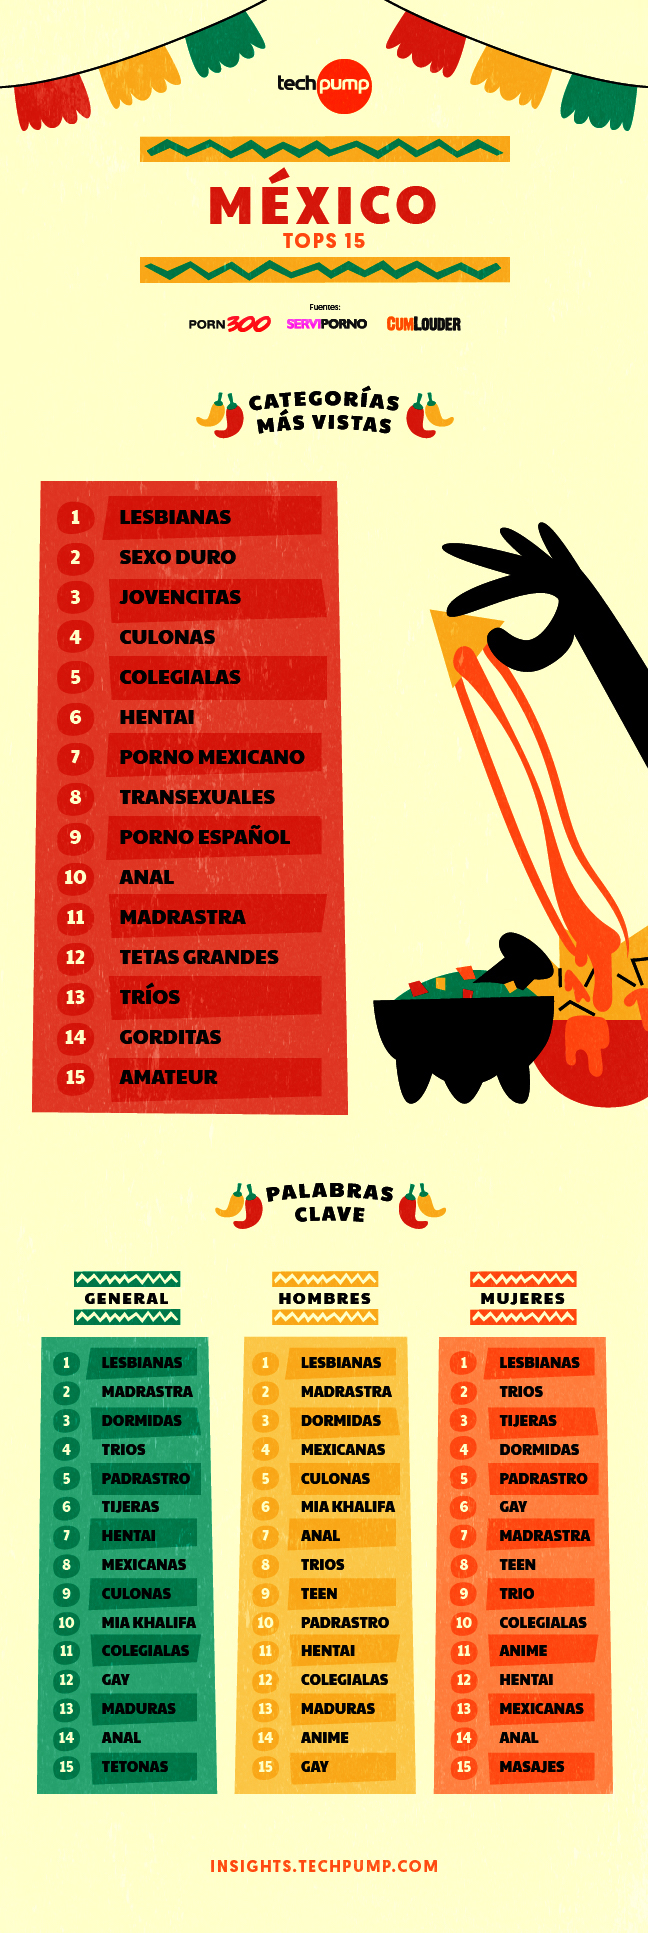 Categorías y palabras clave México